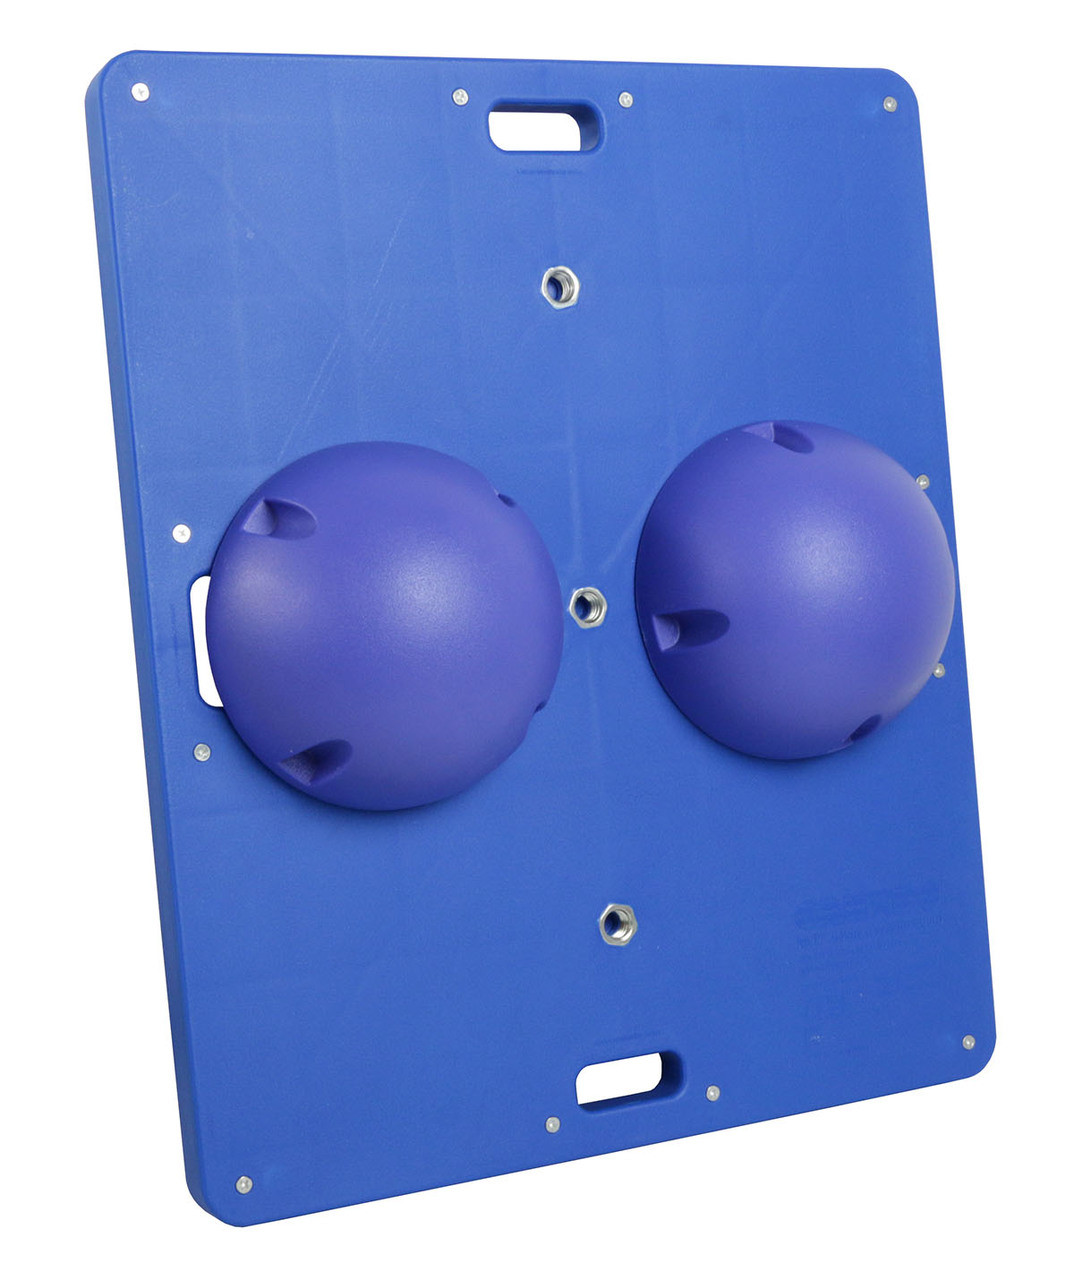 CanDo¨ Balance Board Comboª 14" x 18" wobble/rocker board - 2.5" height - blue